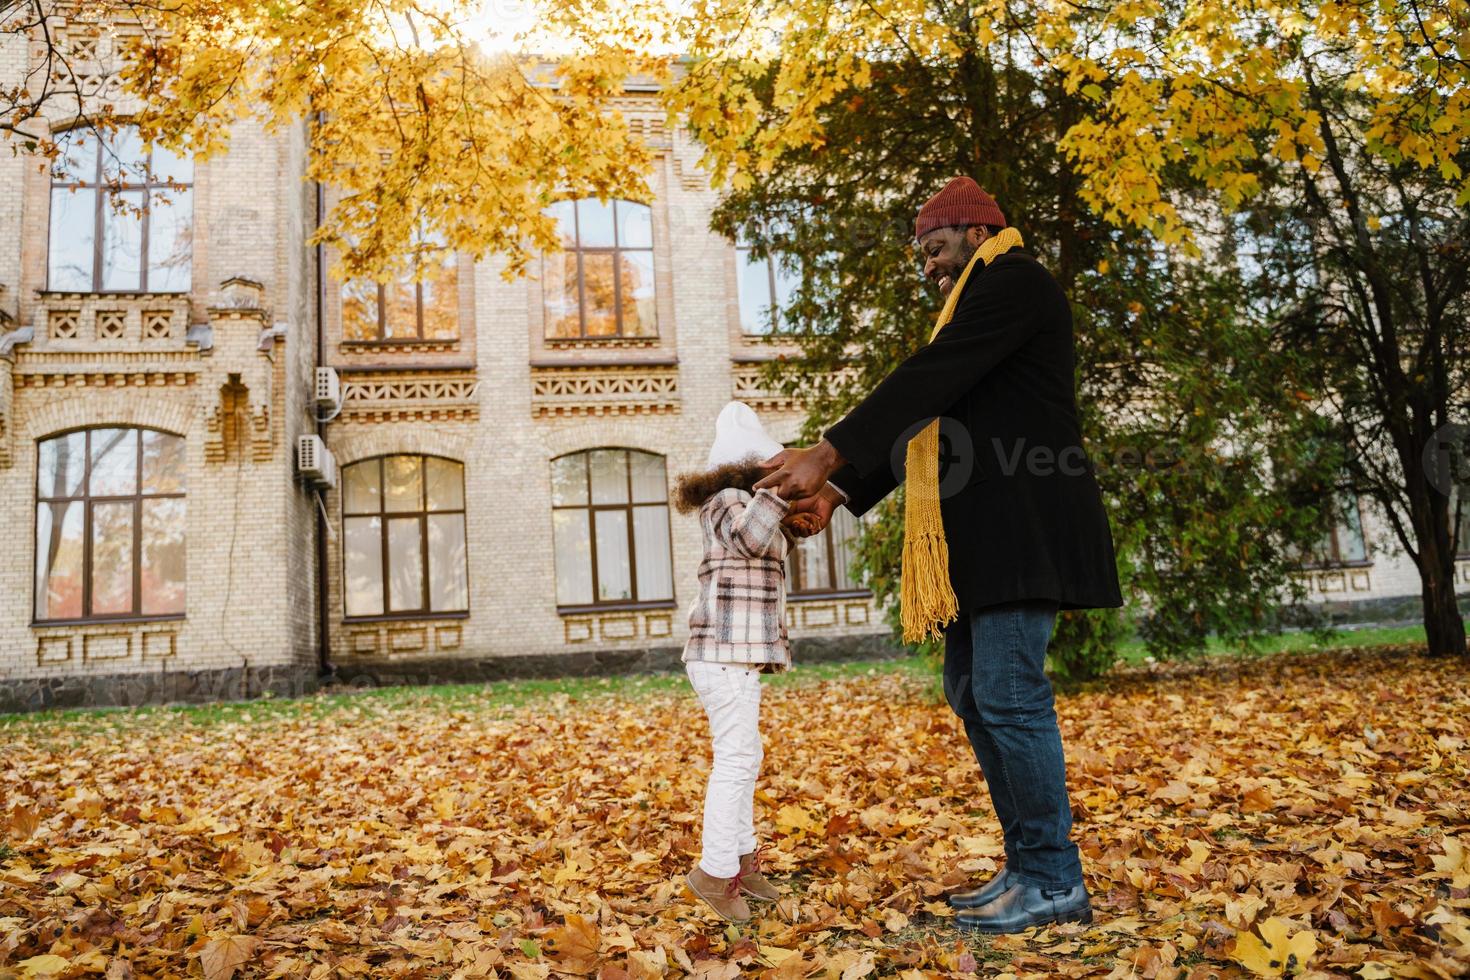 schwarzer Großvater und Enkelin machen Spaß beim gemeinsamen Spielen im Herbstpark foto